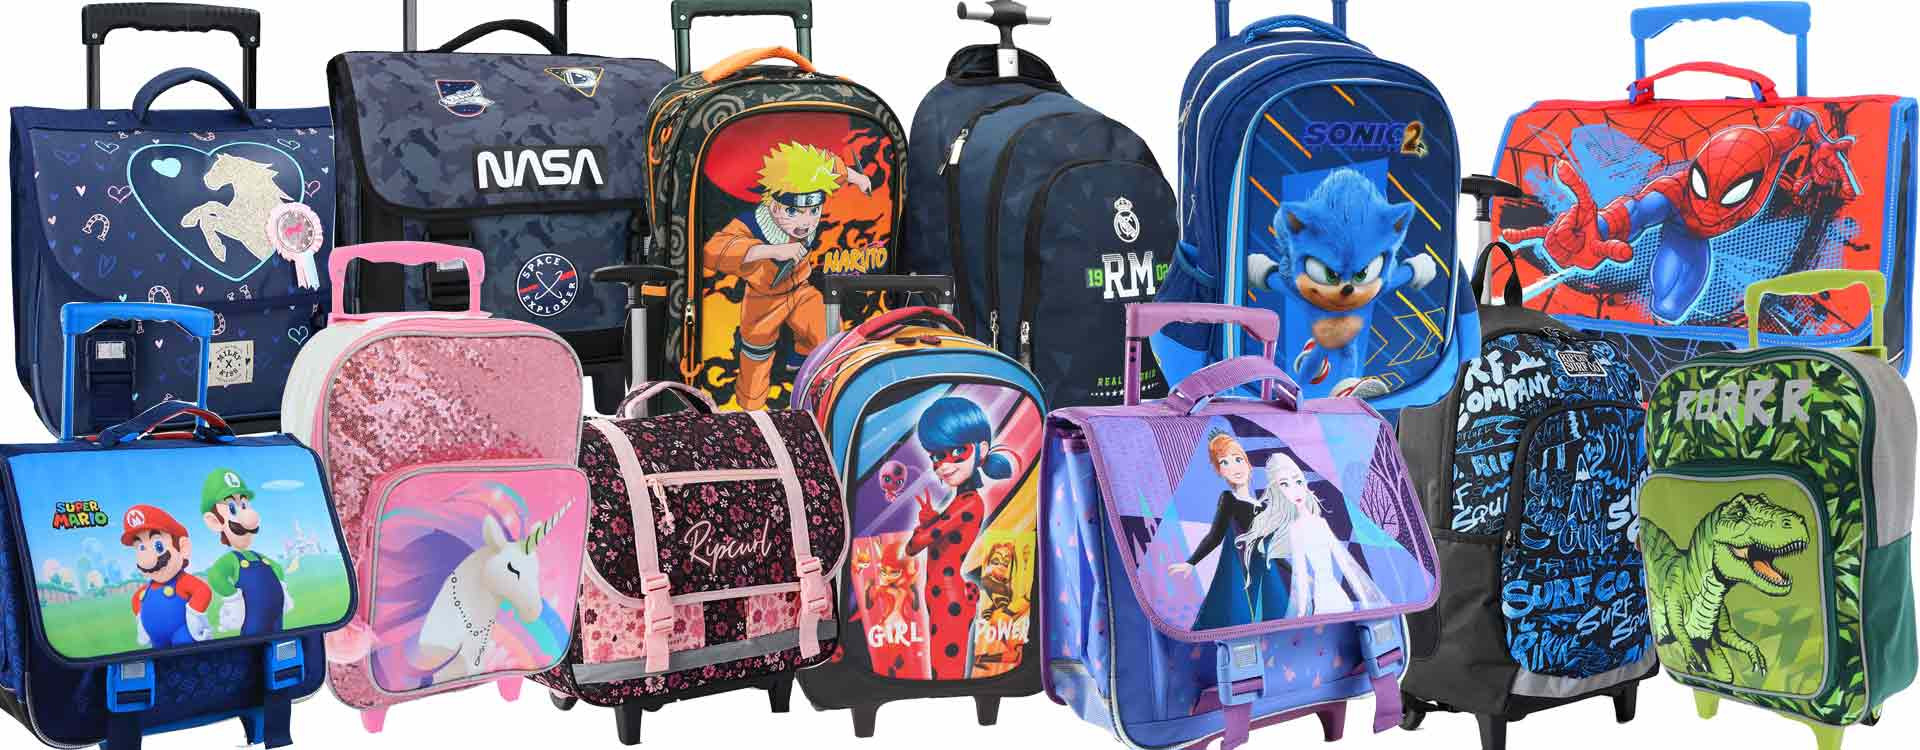 Cuáles son las mejores mochilas para niñas? Guía de comprar.